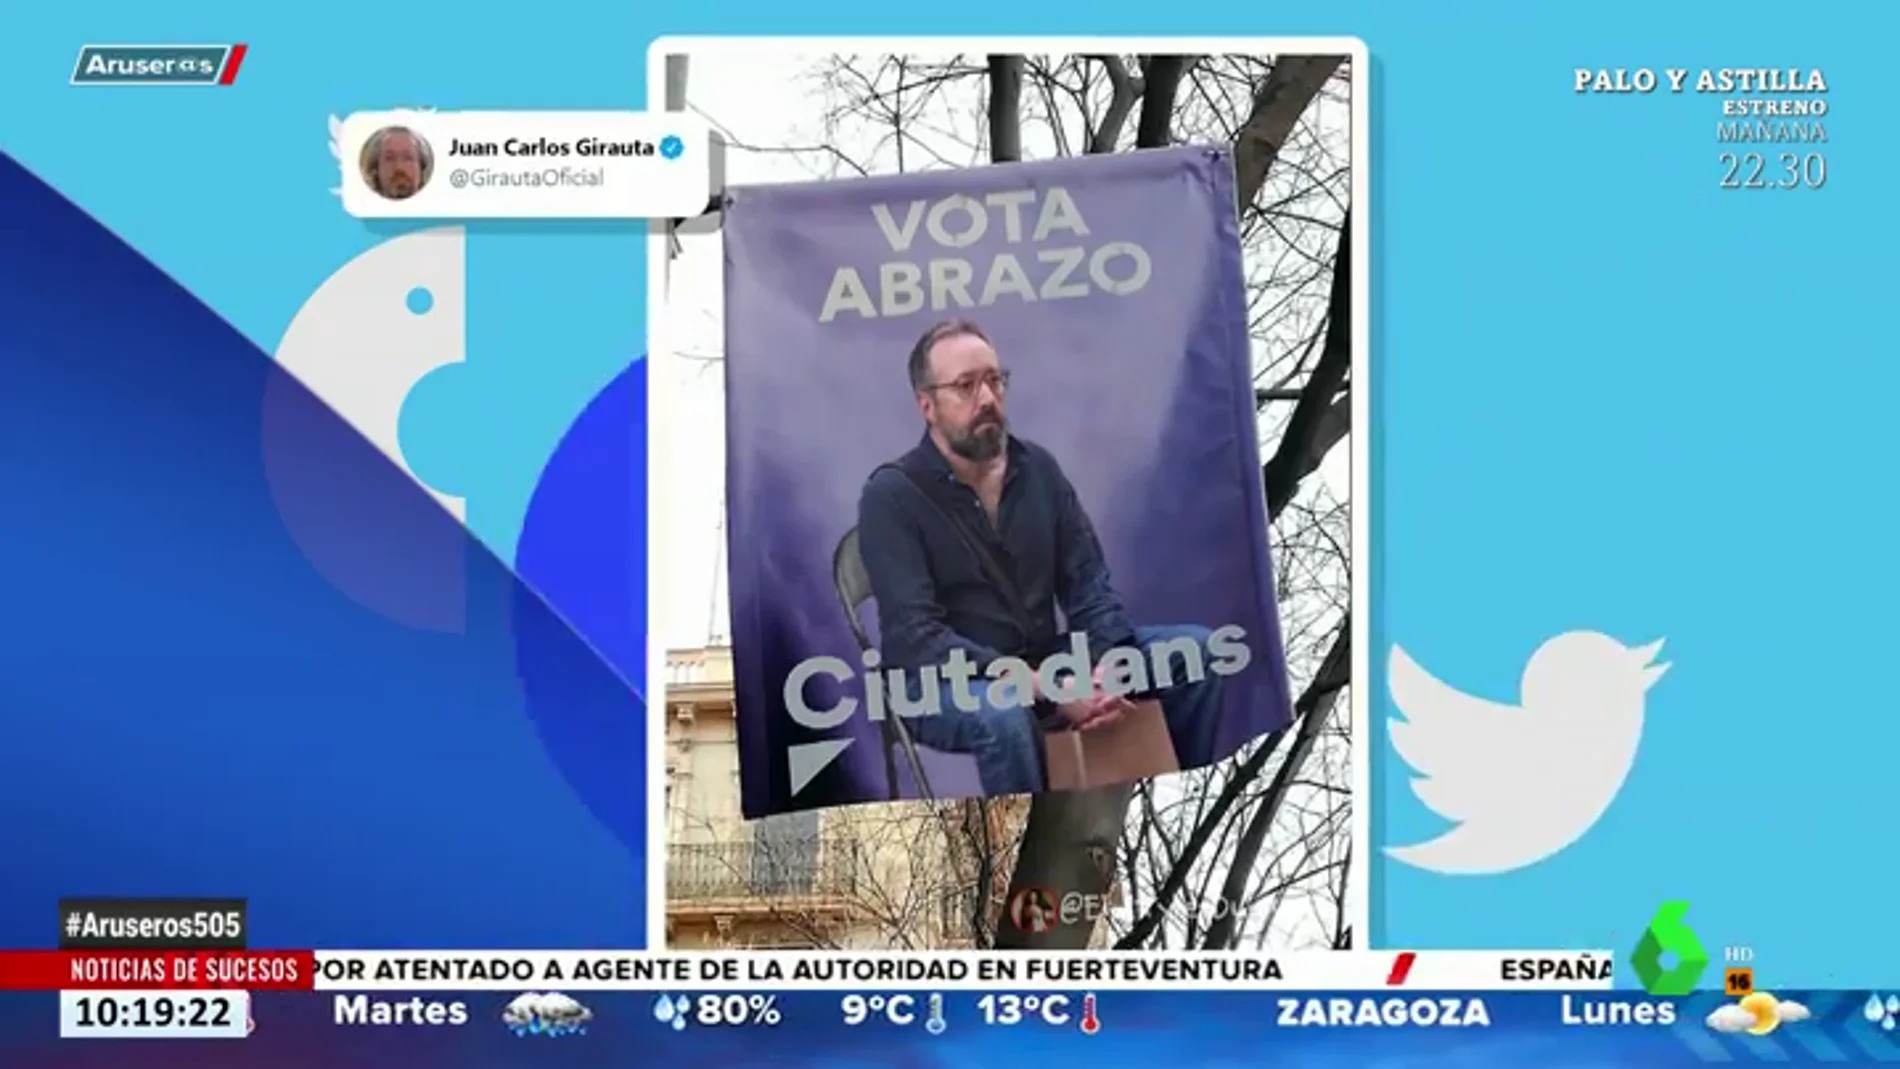 Juan Carlos Girauta trolea a Ciudadanos por la campaña electoral de los abrazos